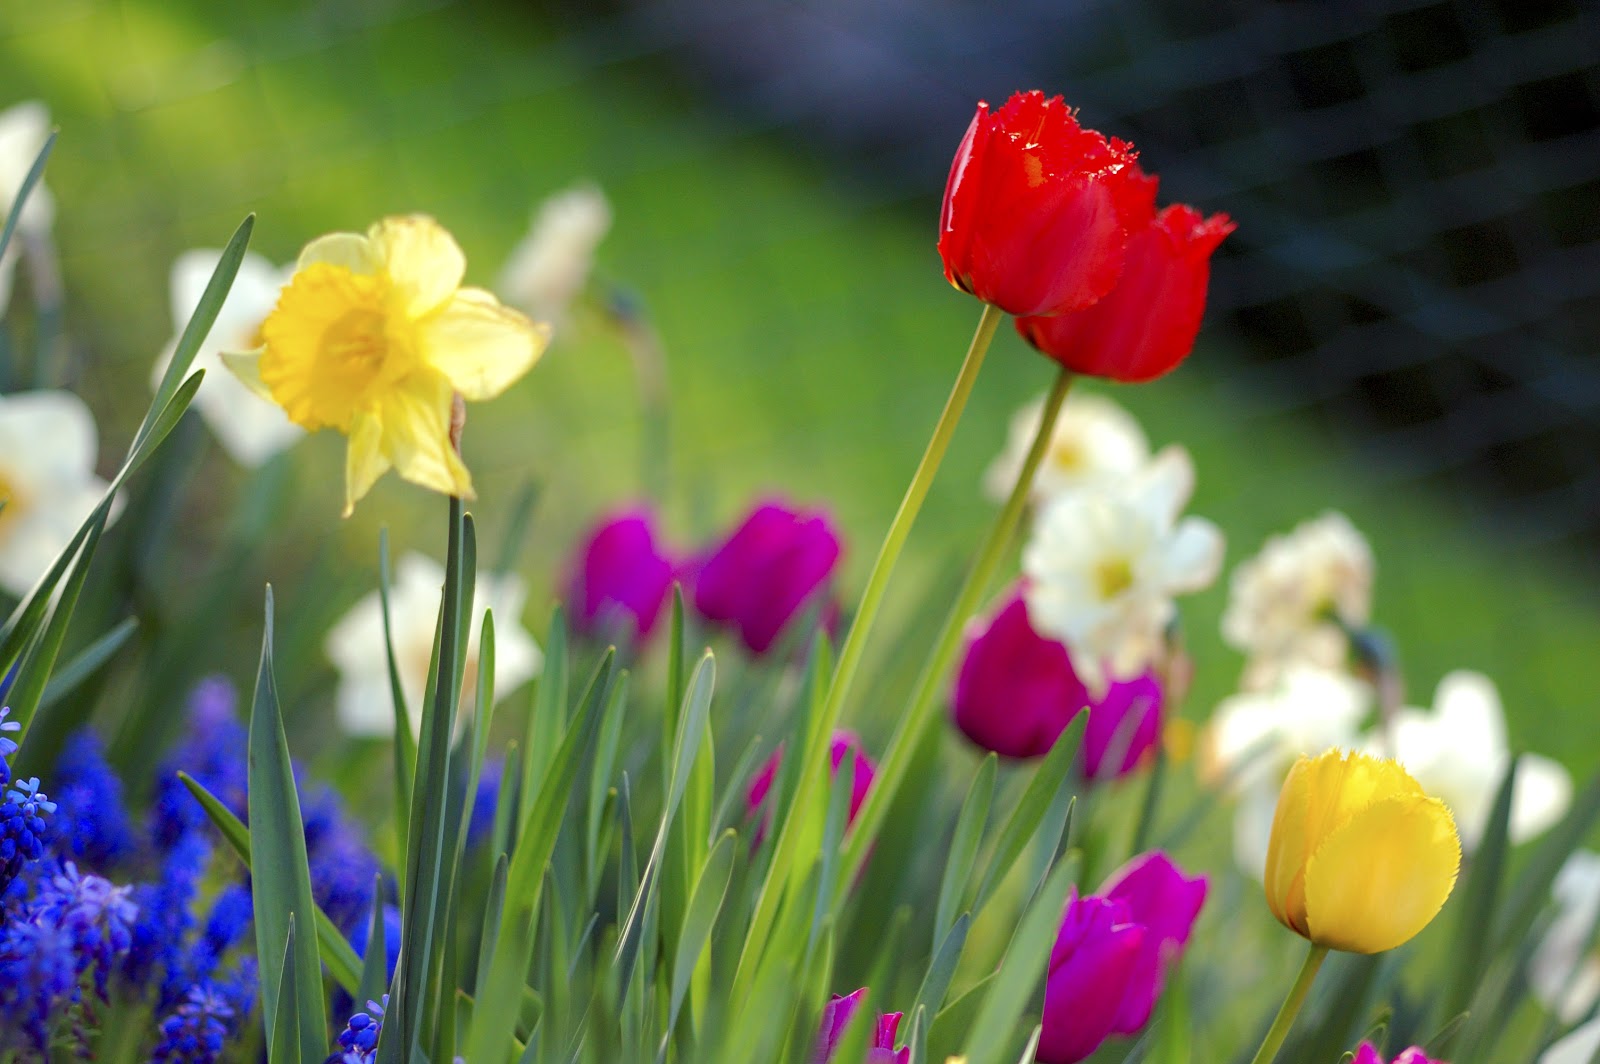 File:Colorful spring garden.